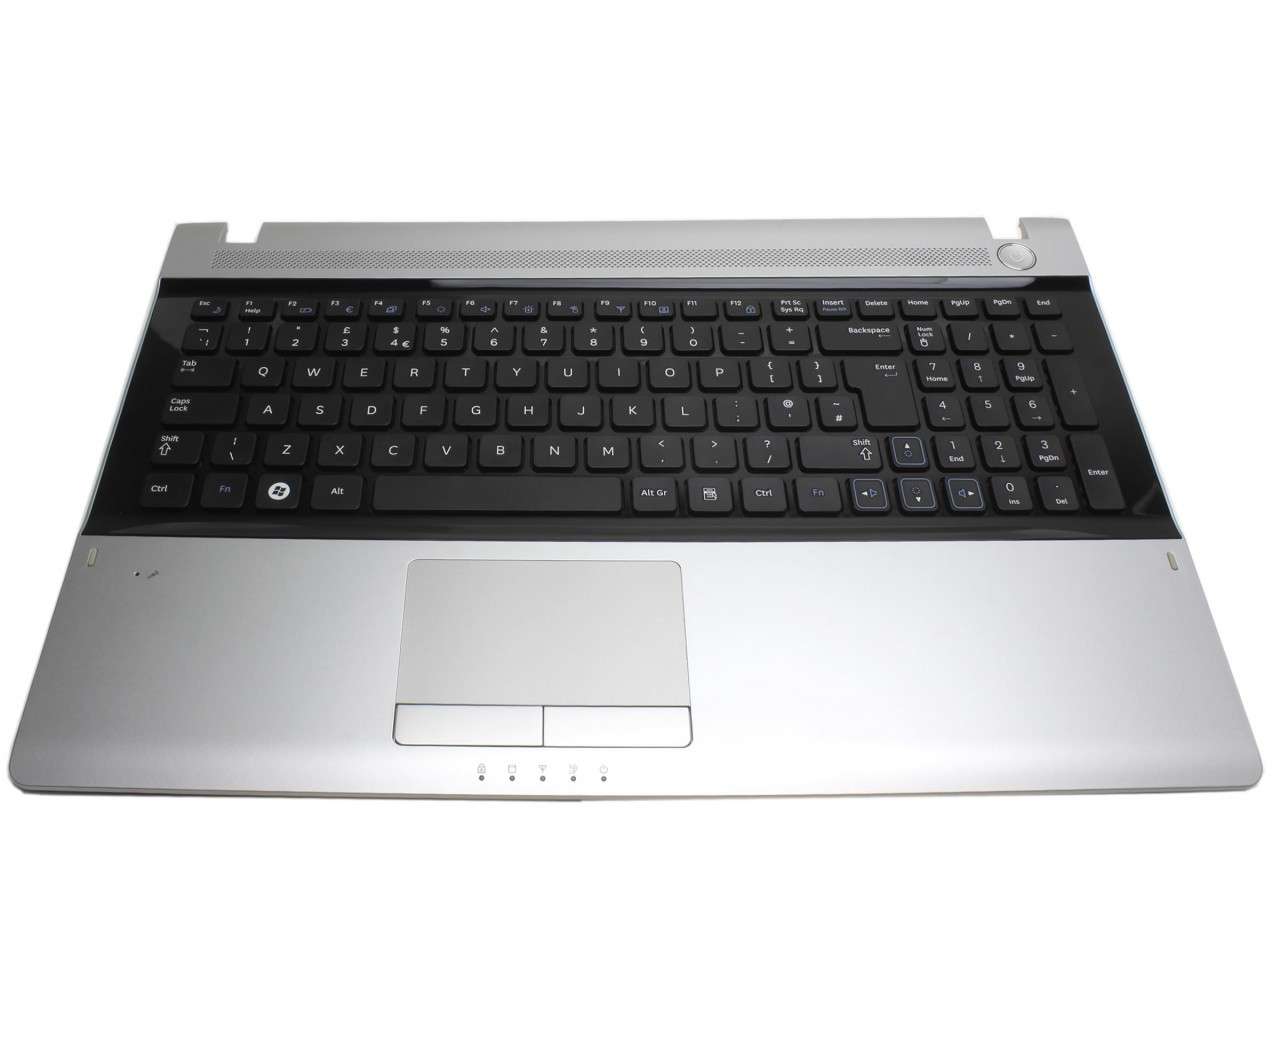 Tastatura Samsung RV511 neagra cu Palmrest argintiu